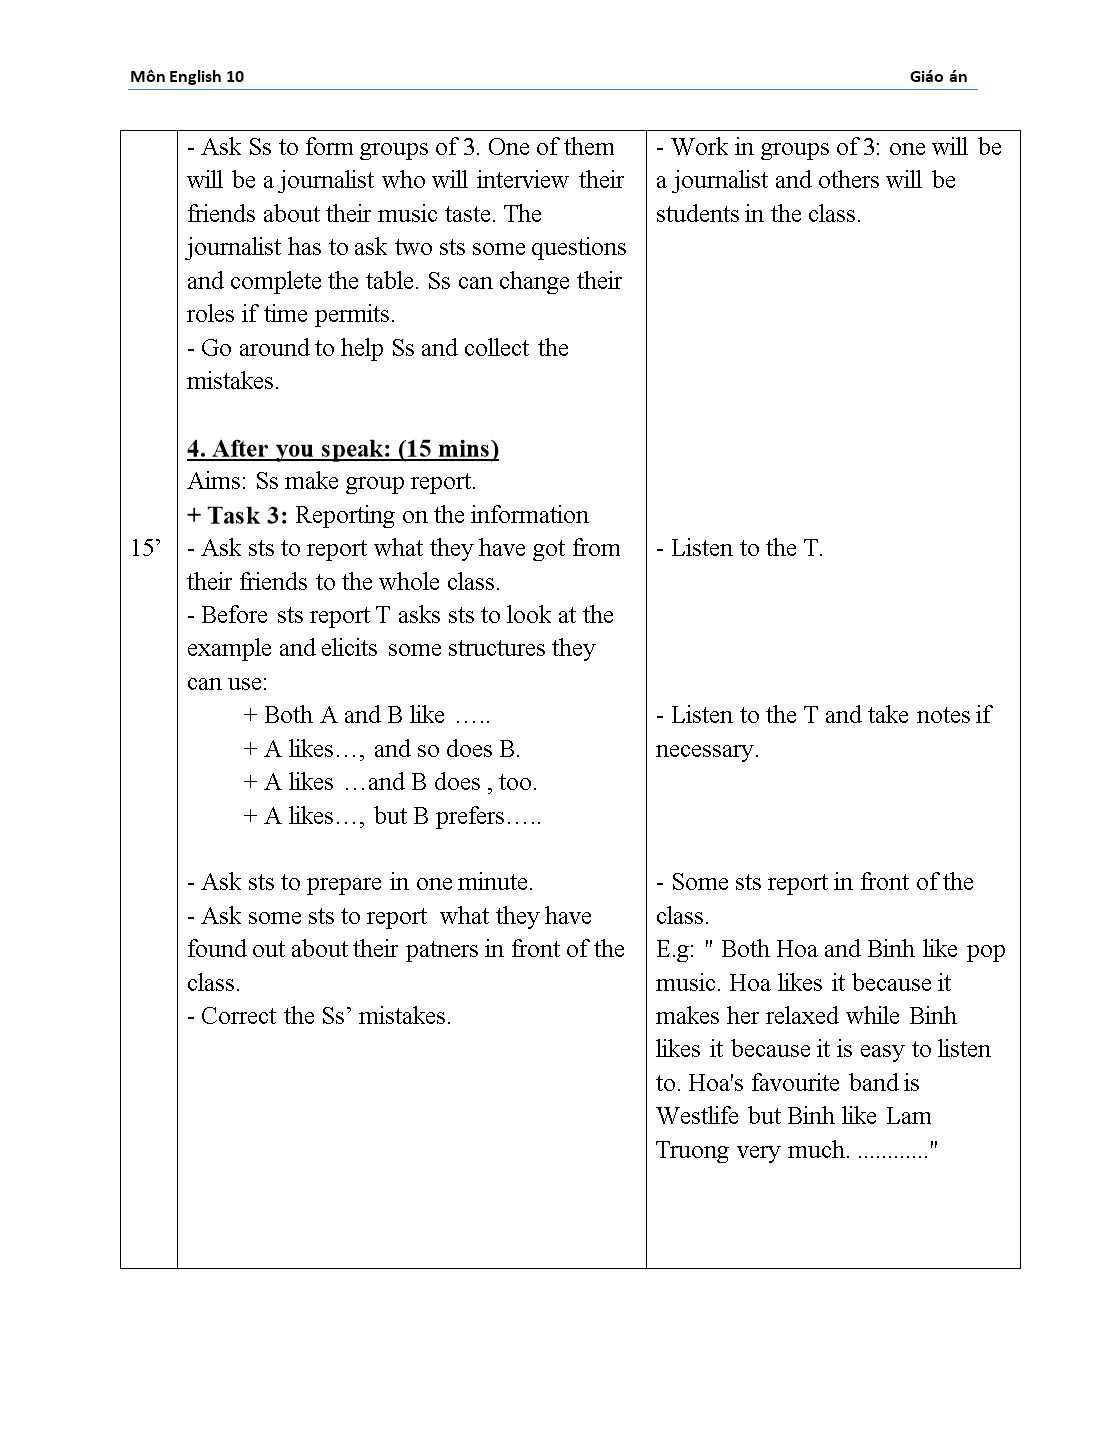 Giáo án môn Tiếng Anh Lớp 10 - Unit 12: Music trang 8